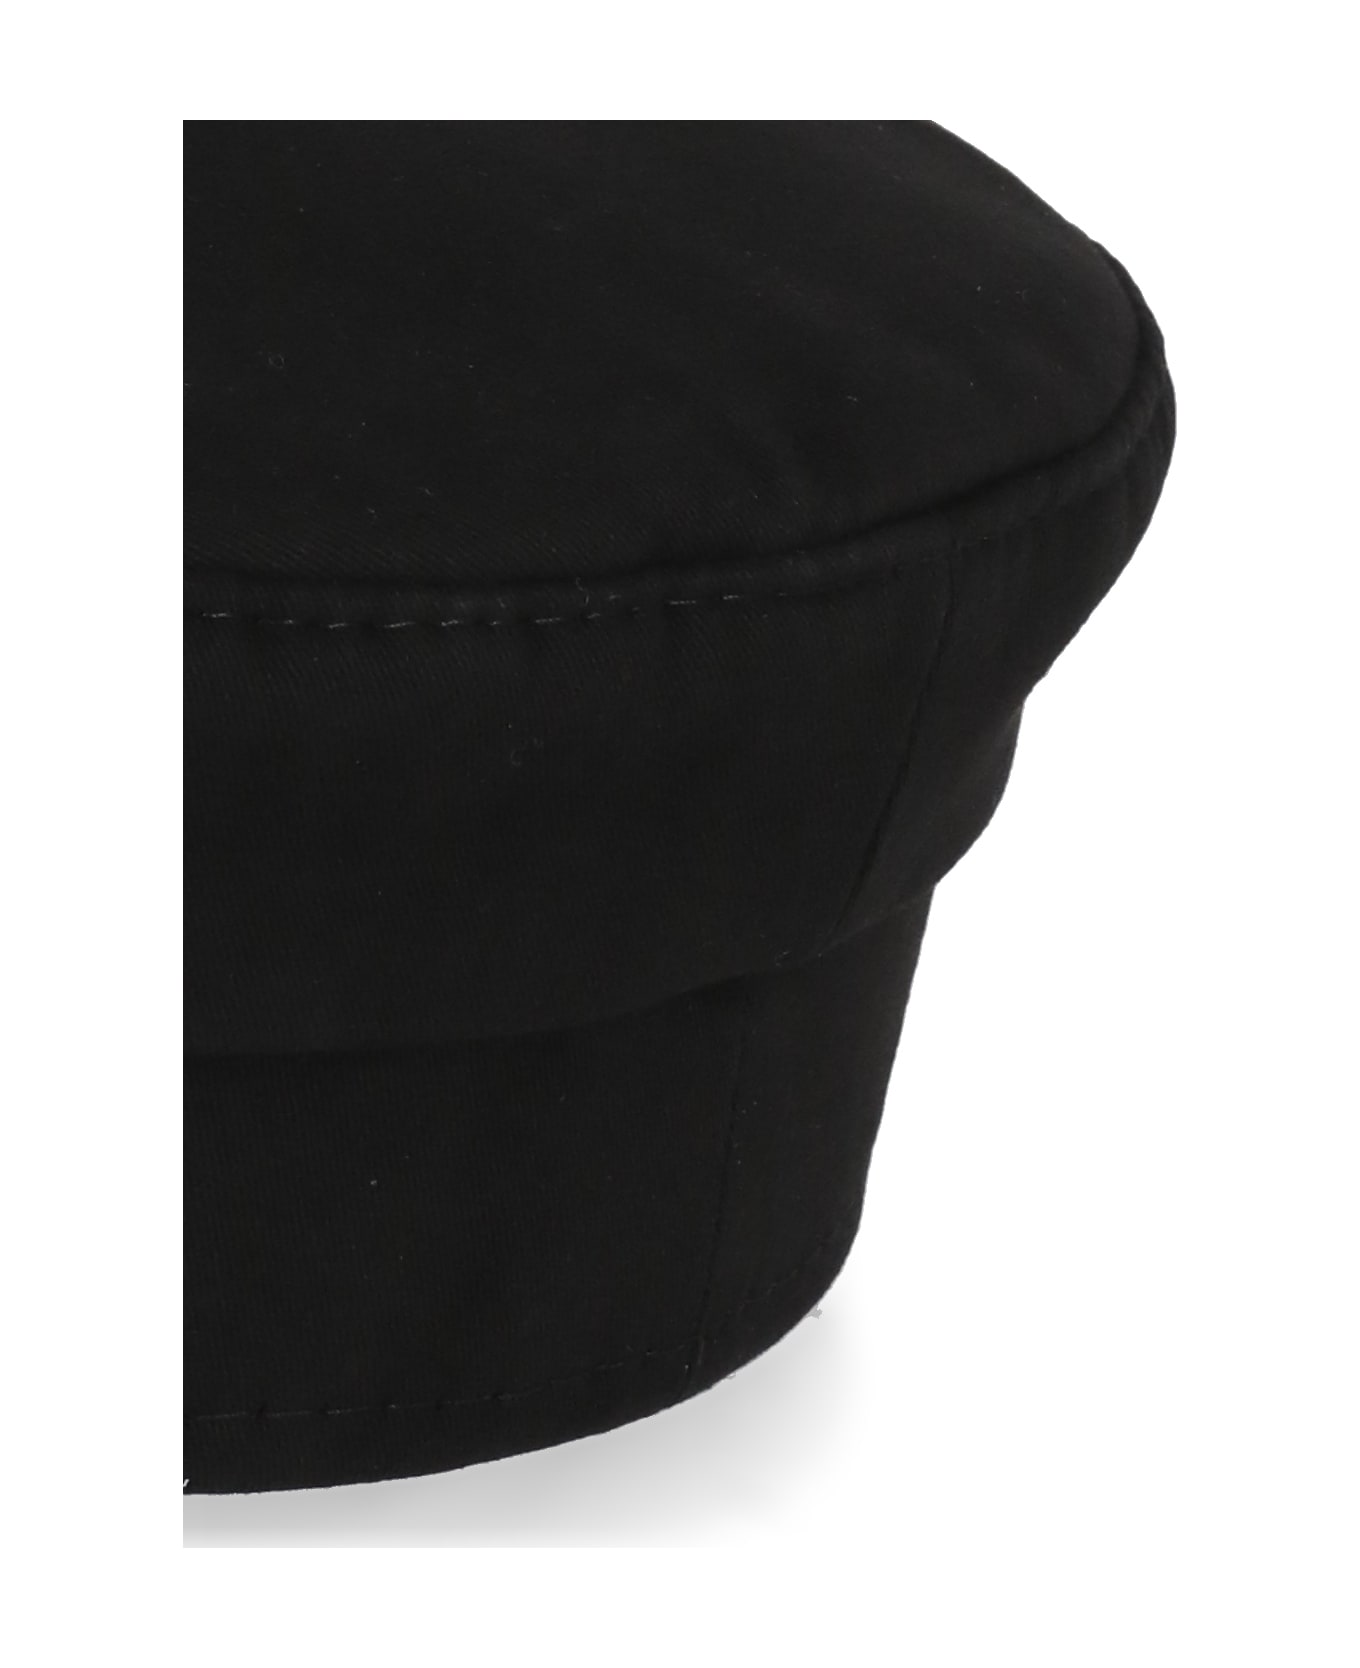 Ruslan Baginskiy Logoed Hat - Black